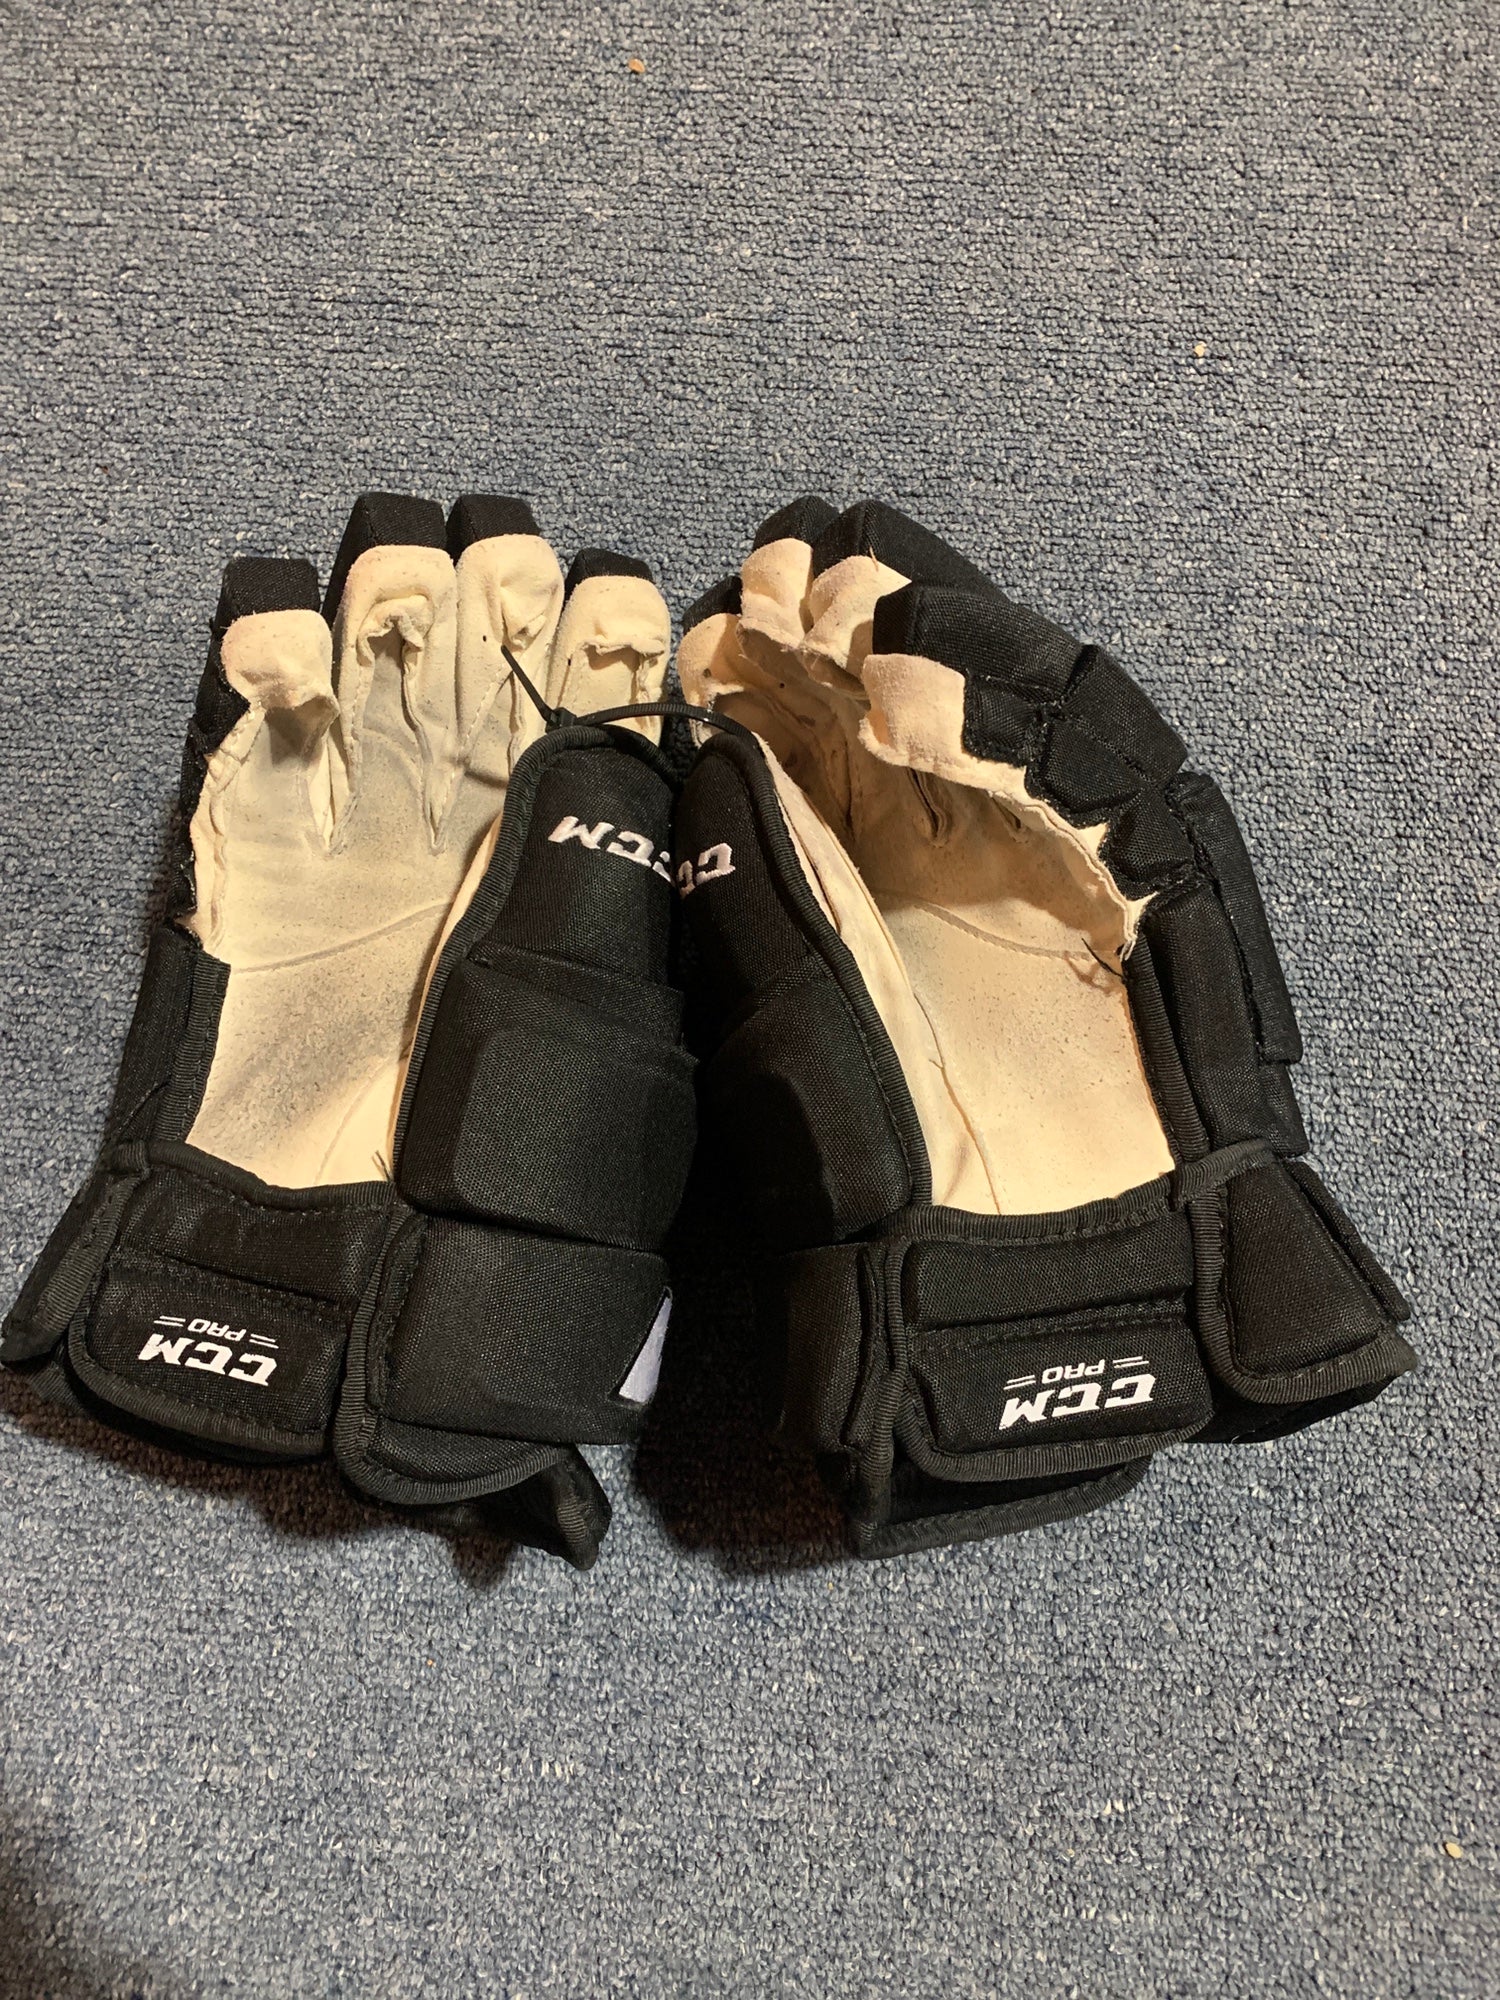 CCM HG97 Pro Stock Hockey Gloves Black AVALANCHE 4283 